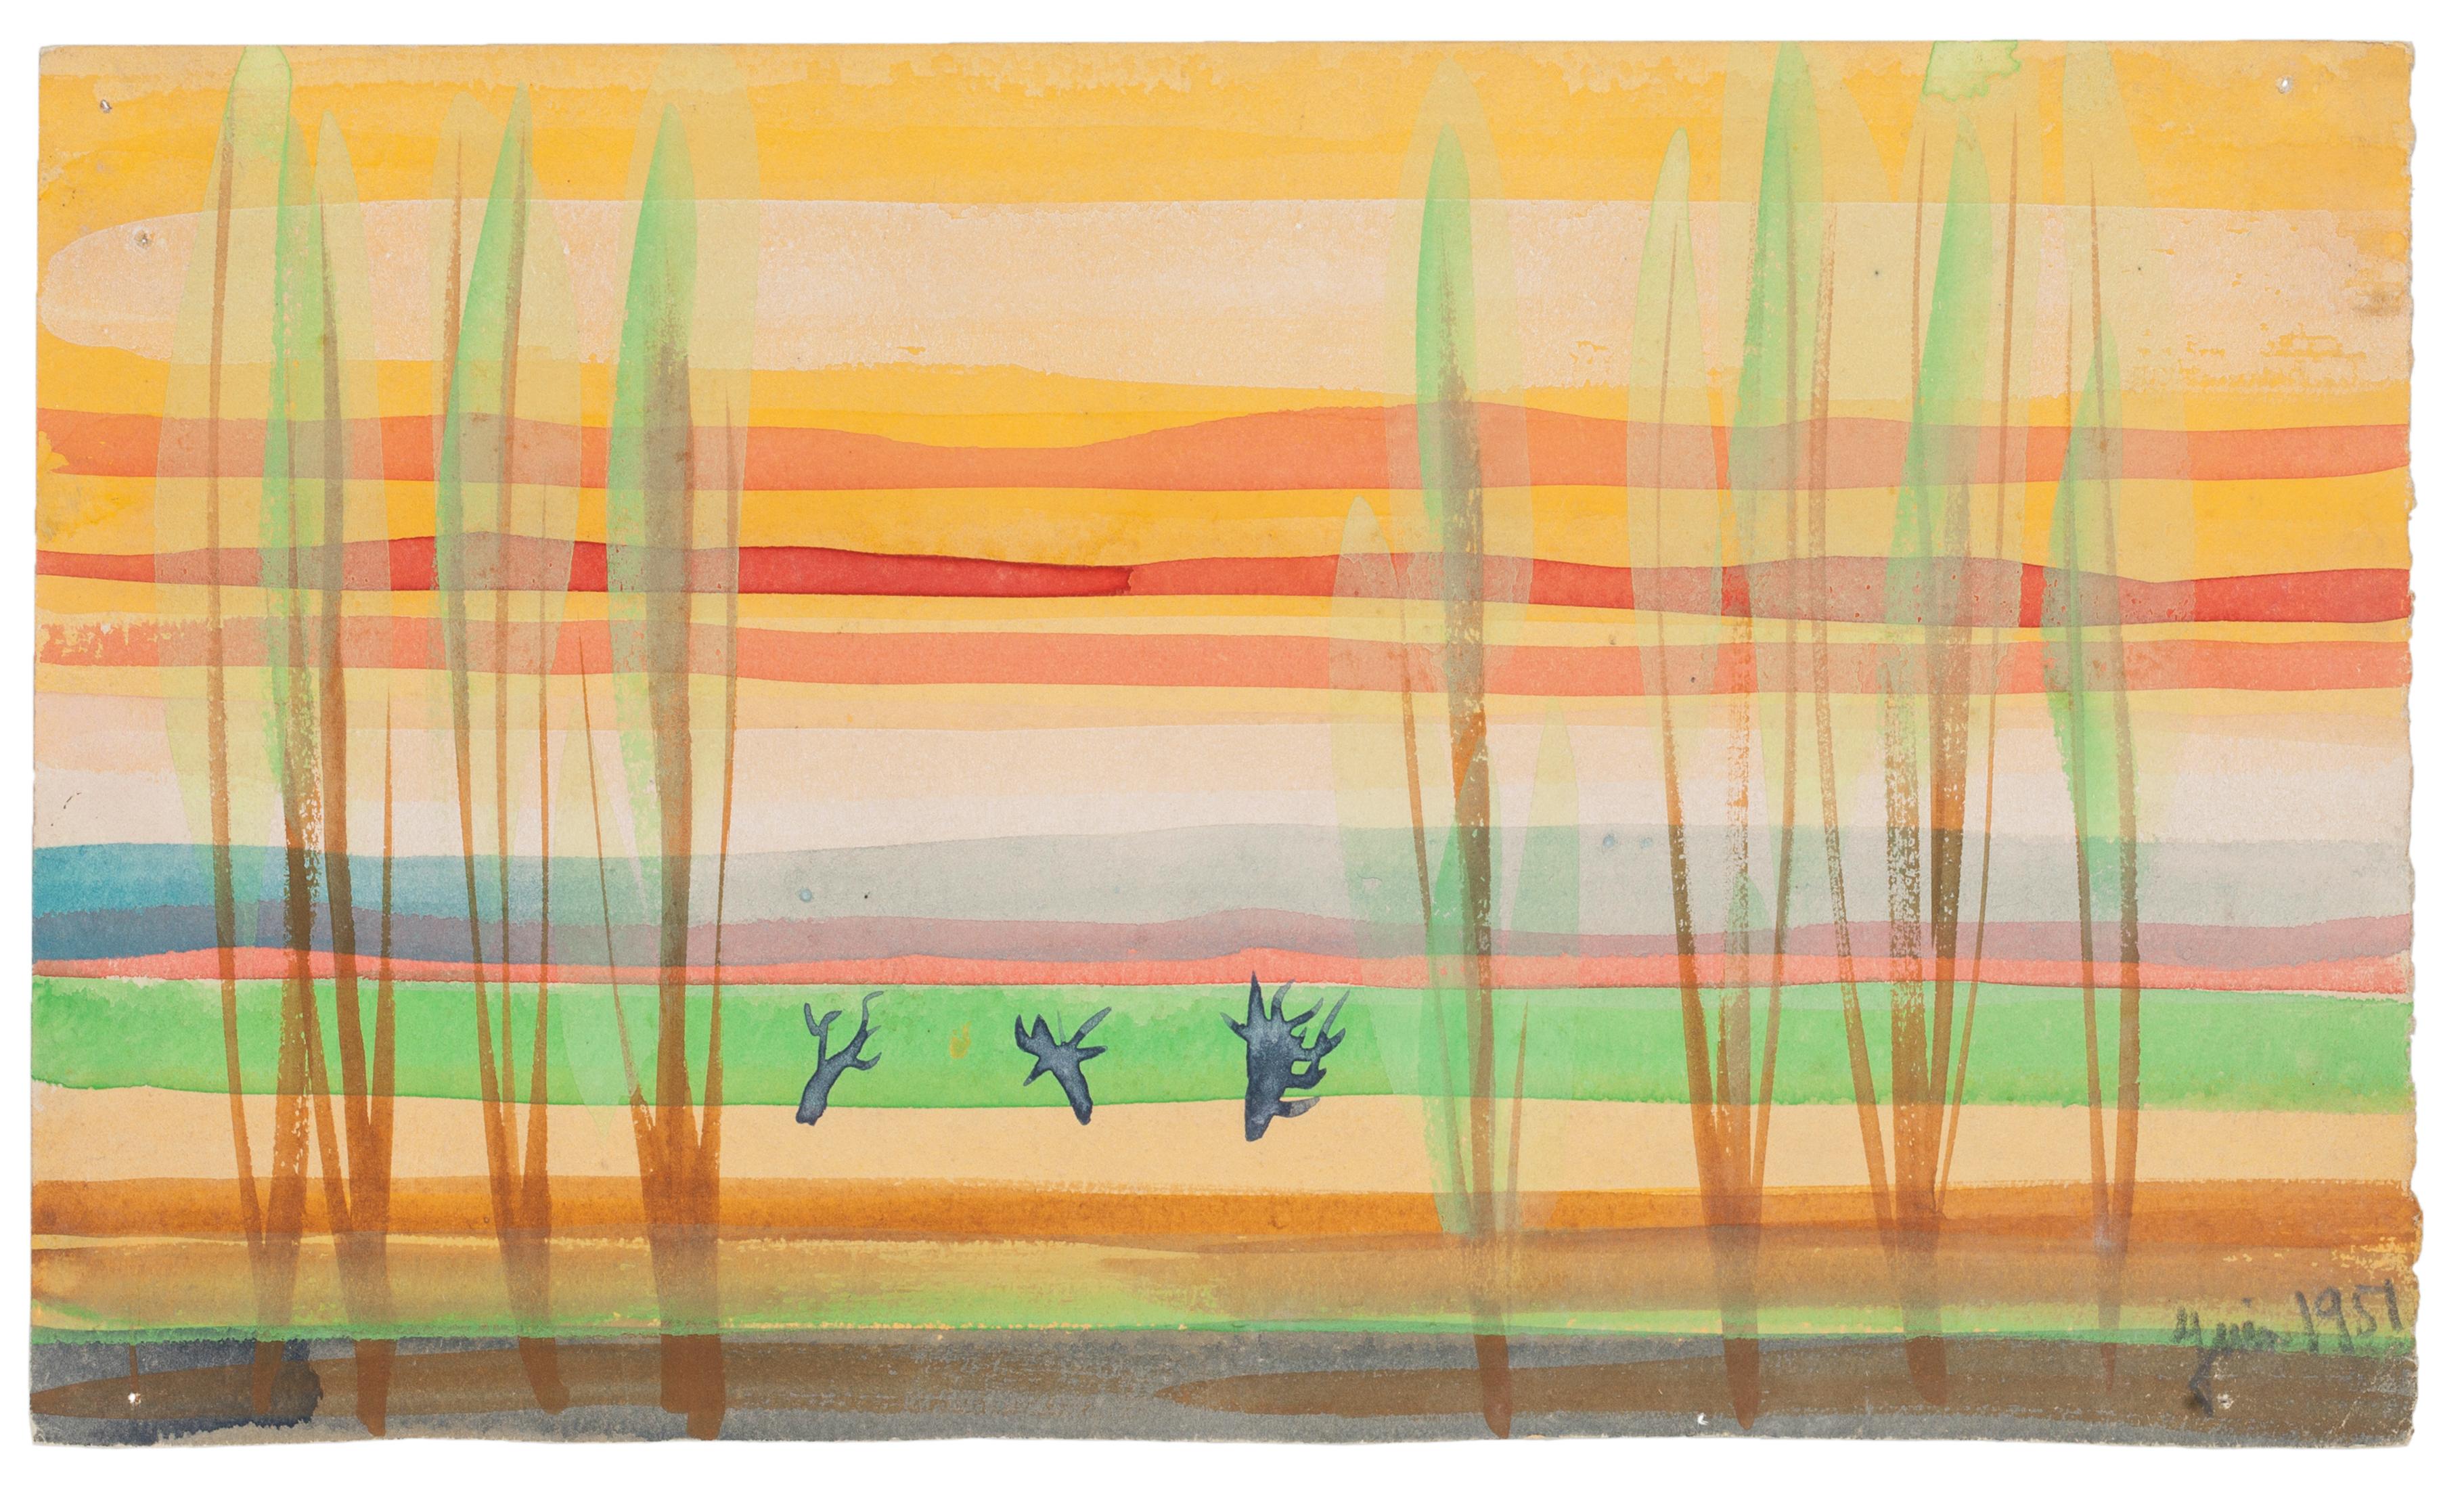 "Fantastische Landschaft" ist eine Originalzeichnung in Aquarell auf Papier von Jean Delpech (1916-1988). 
Der Erhaltungszustand der Kunstwerke ist sehr gut.

Blattgröße: 15,7 x 27 cm.

Das Kunstwerk stellt eine schöne Landschaft mit lebendigen